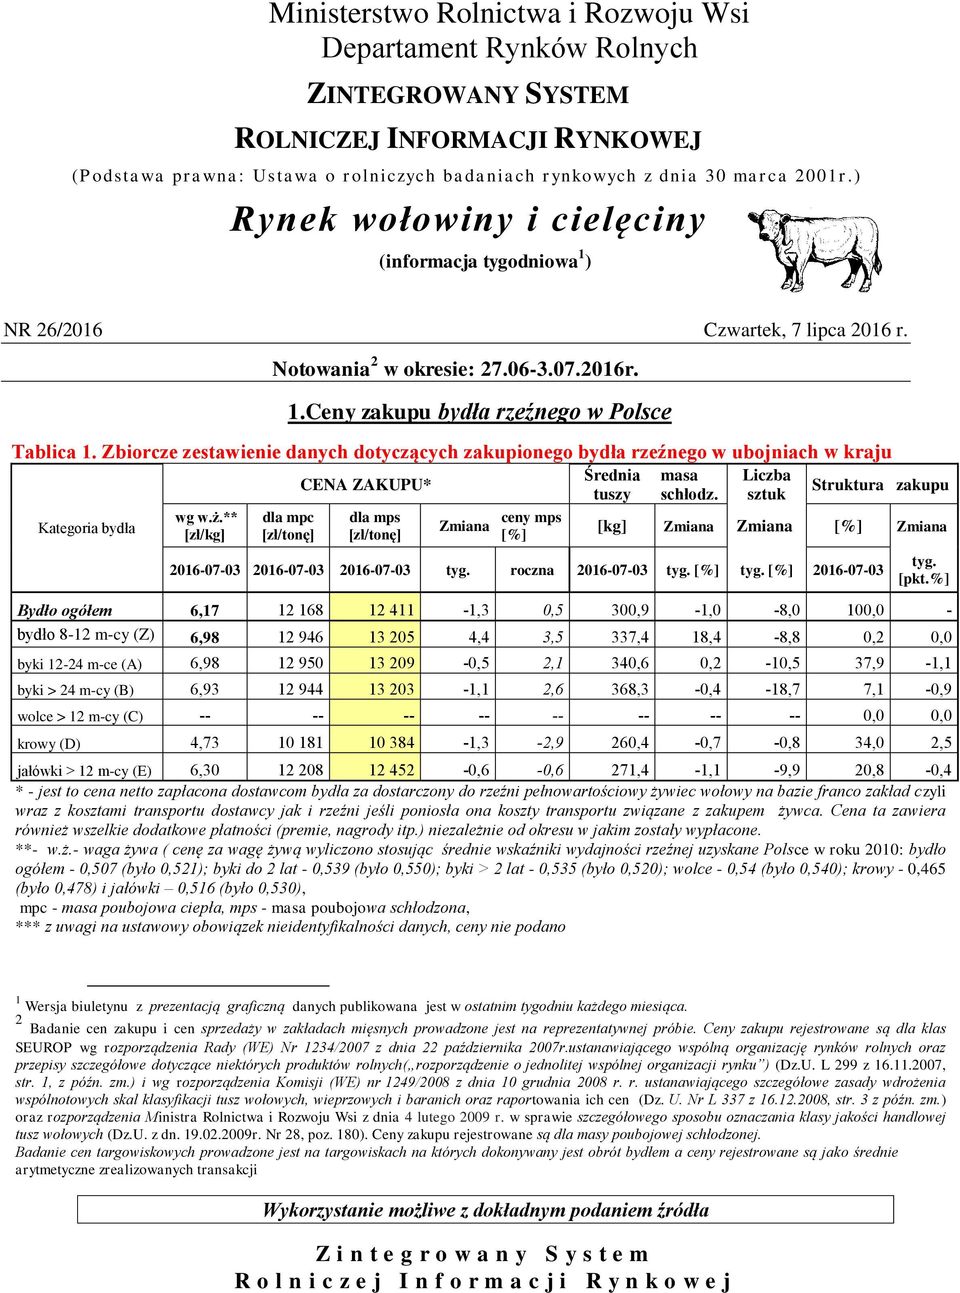 Zbiorcze zestawienie danych dotyczących zakupionego bydła rzeźnego w ubojniach w kraju wg w.ż.** [zł/kg] dla mpc CENA ZAKUPU* dla mps ceny mps Średnia tuszy masa schłodz.